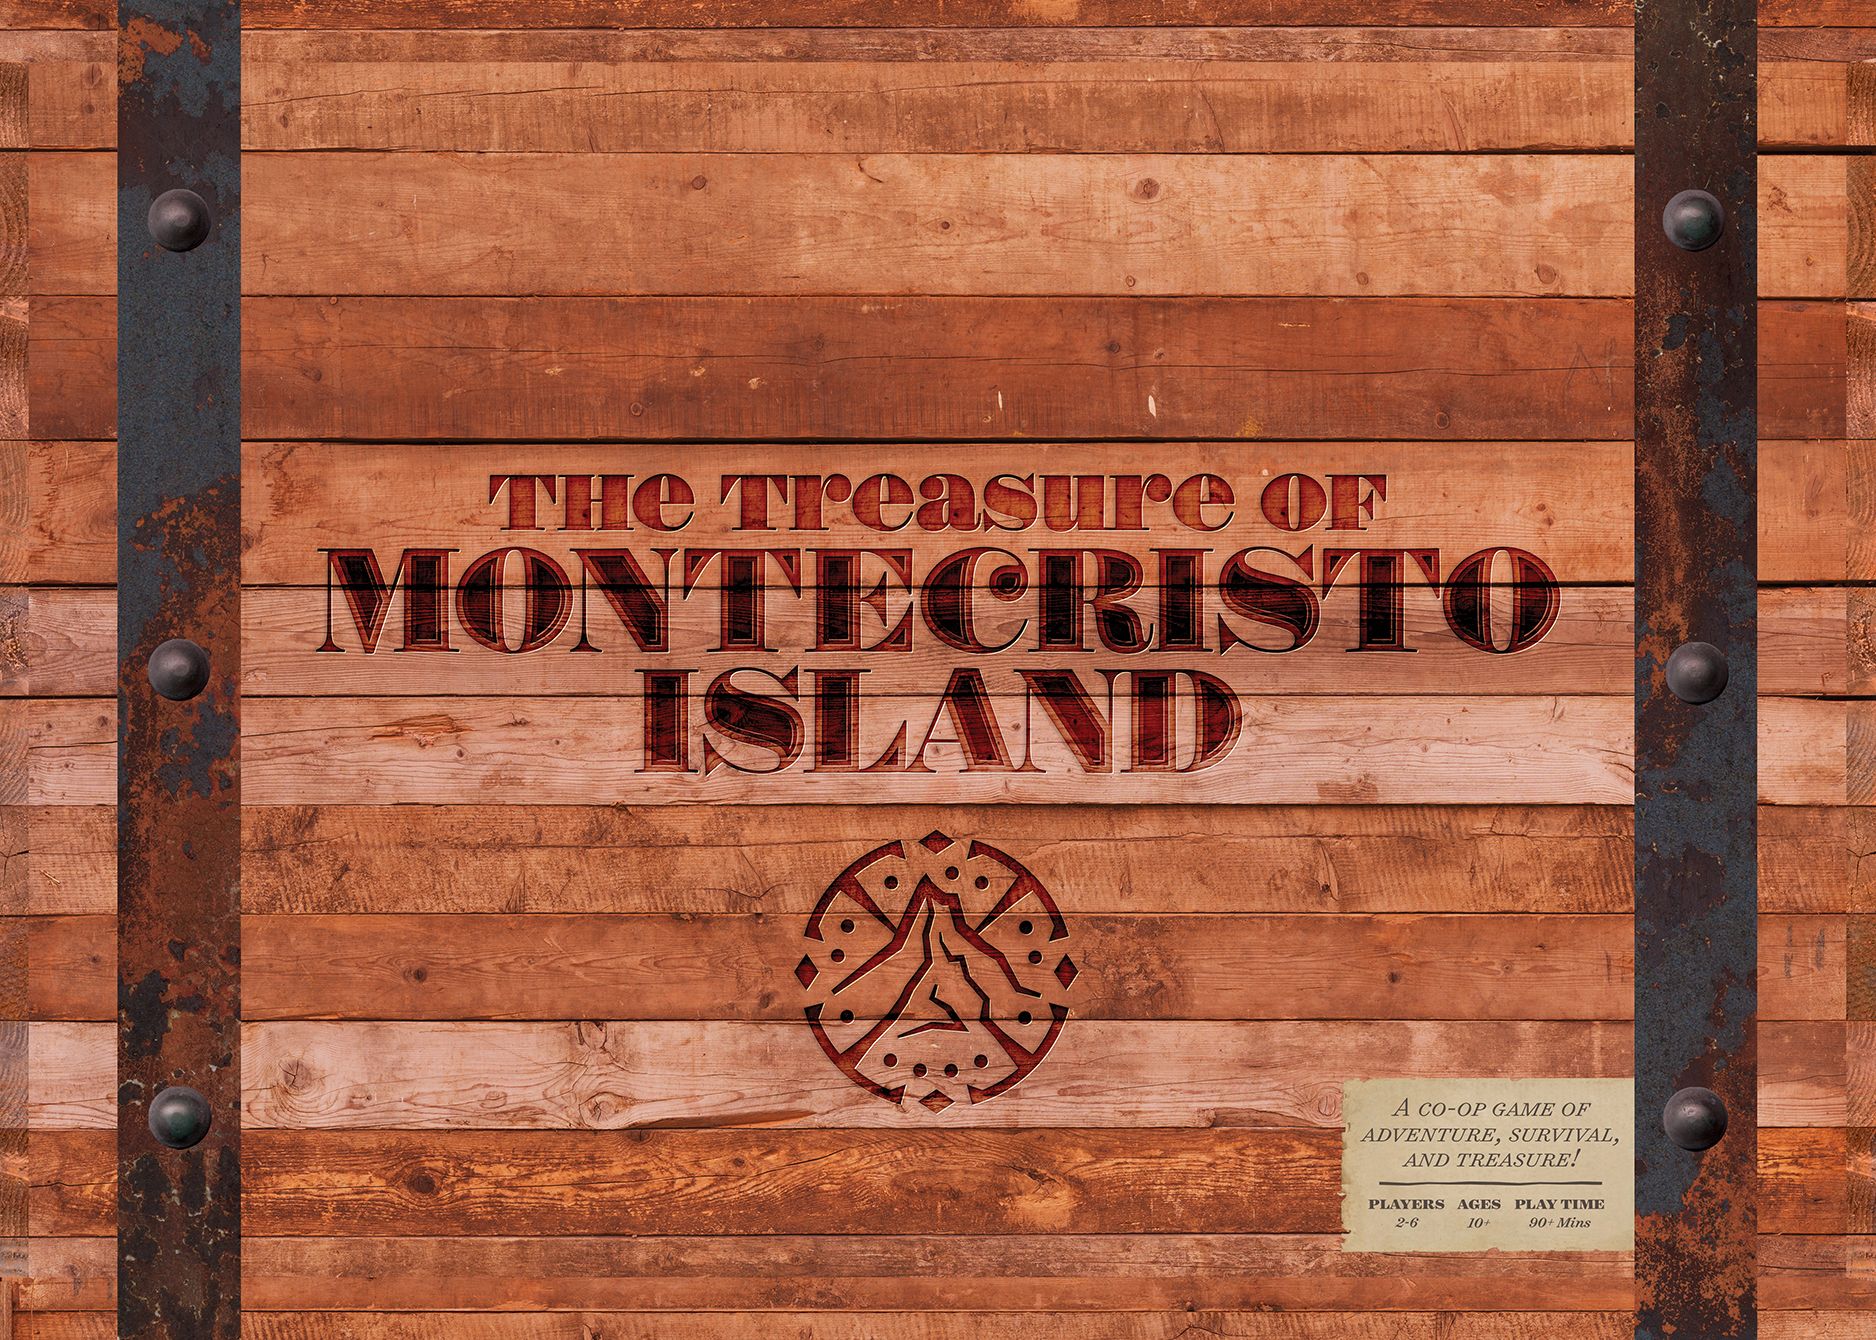 The Treasure of Montecristo Island